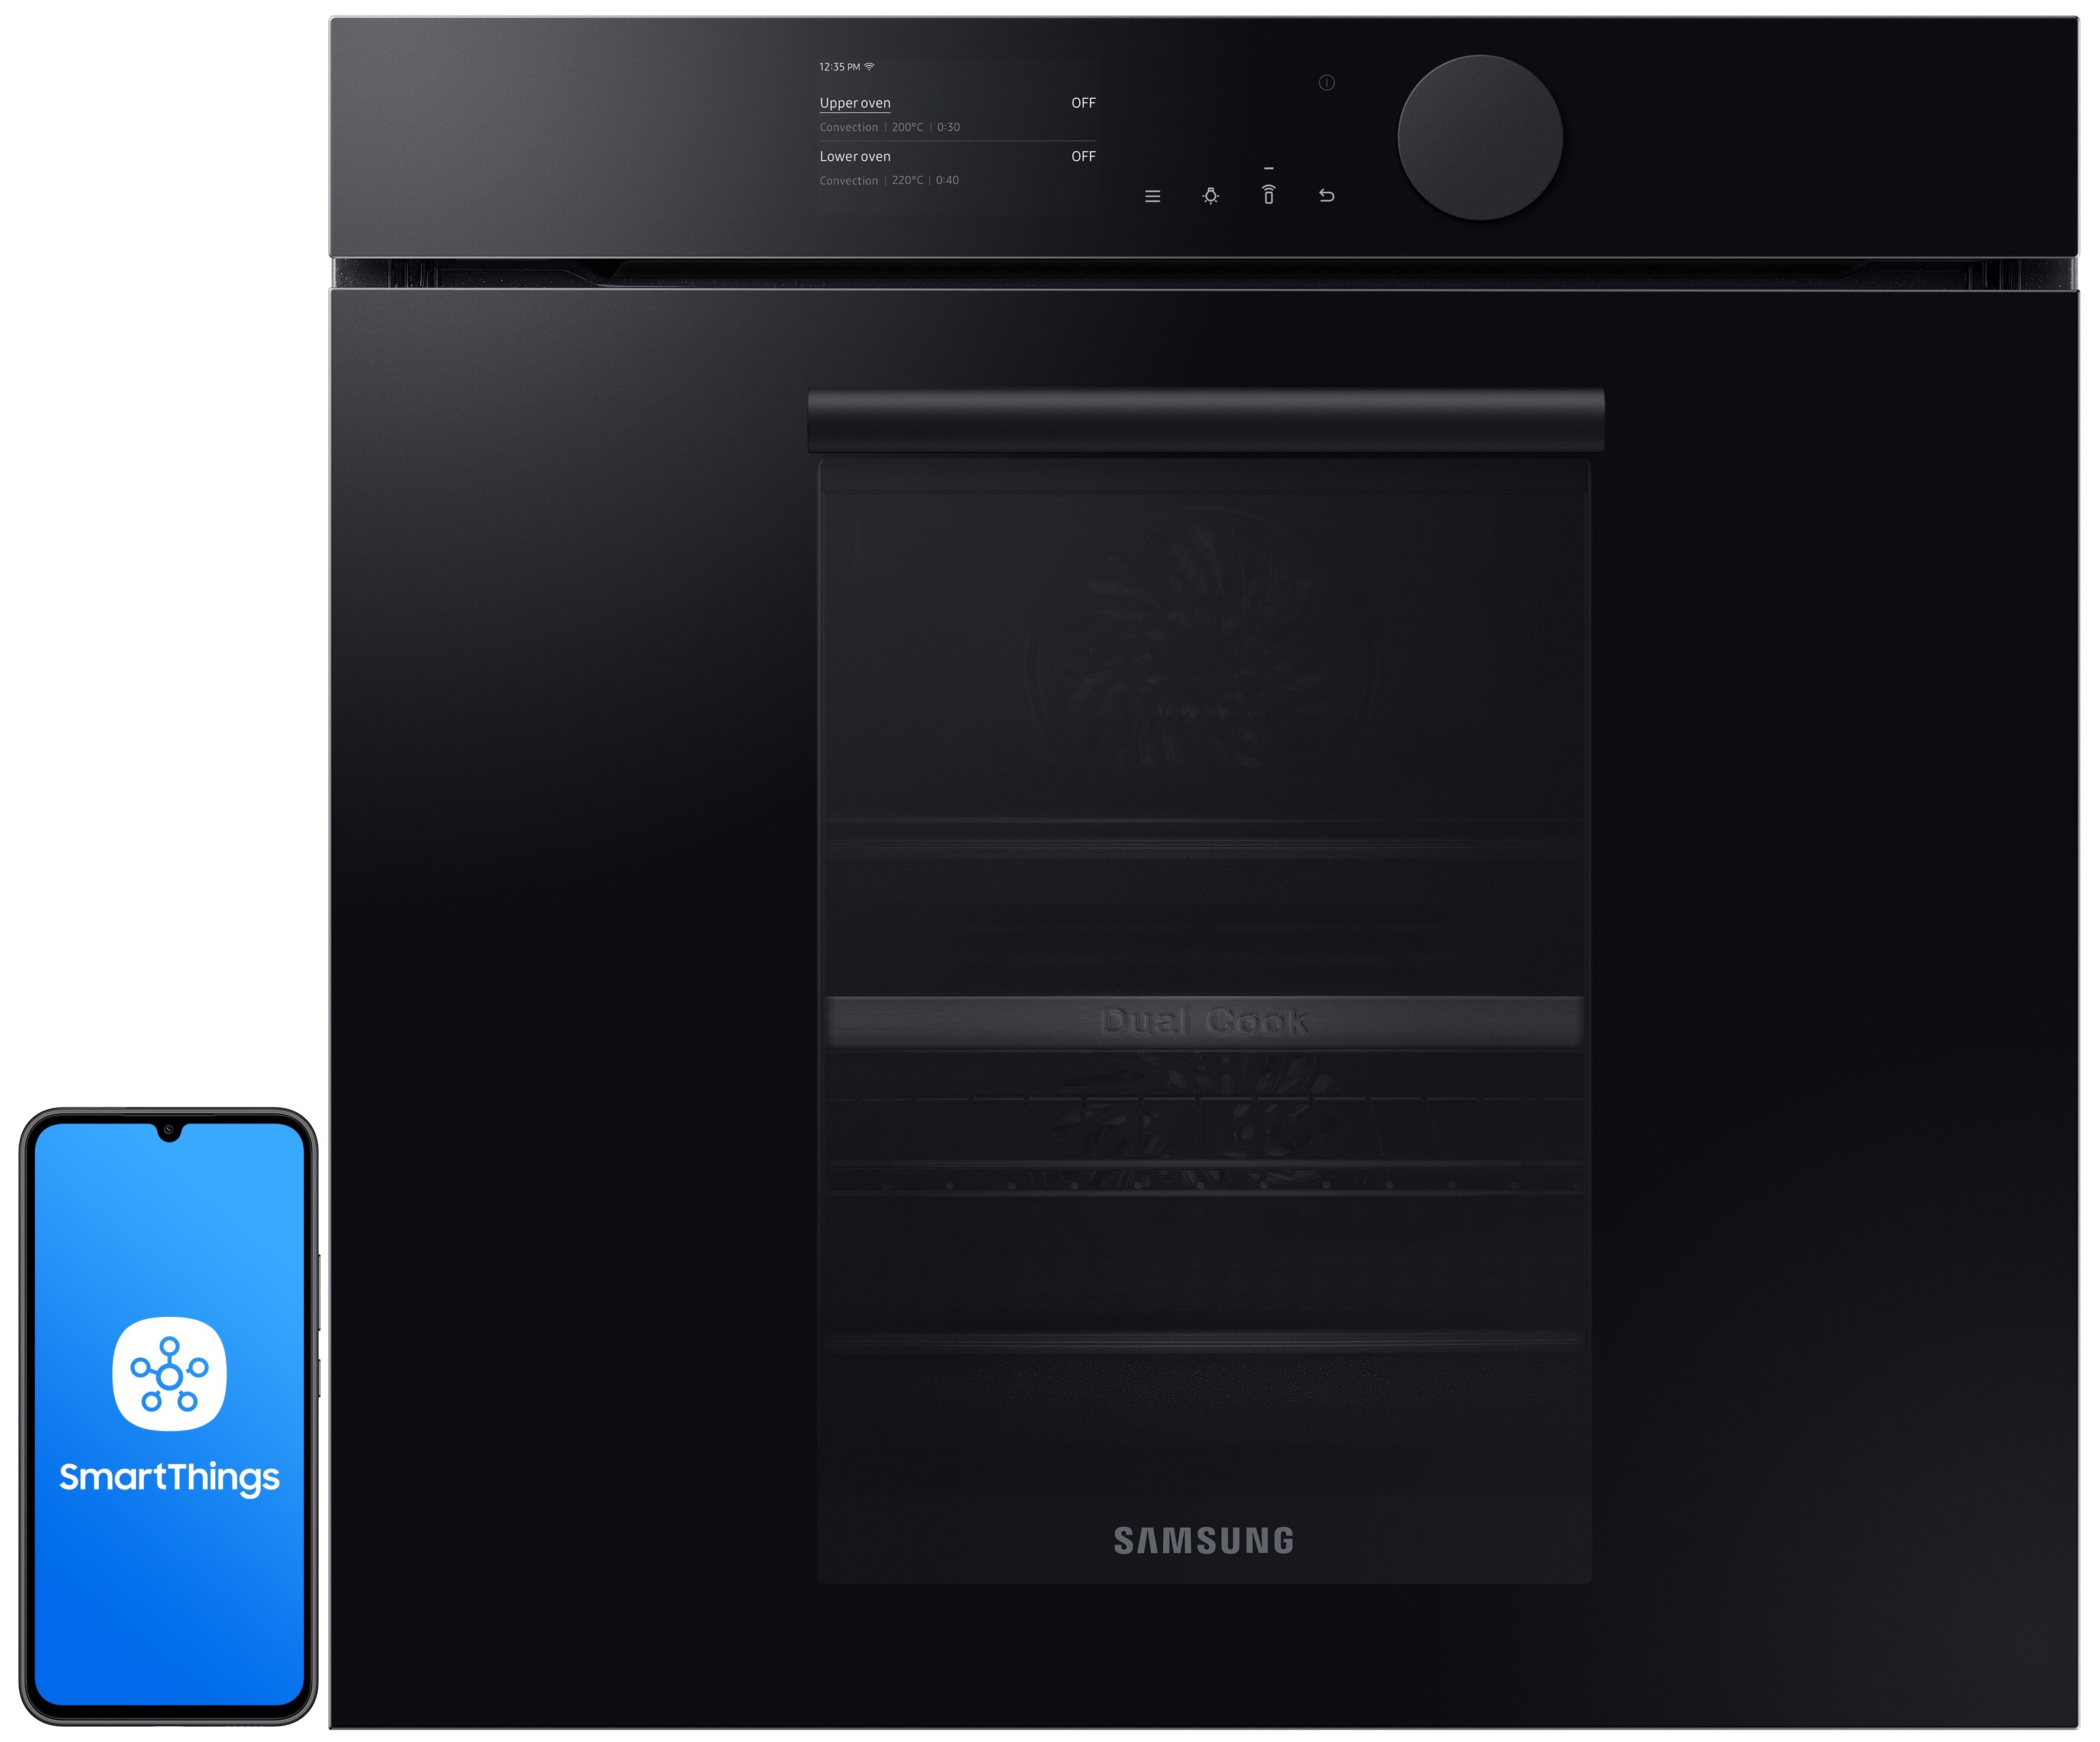 SAMSUNG NV75T8549RK EO Dual Cook Elektryczny Czarny A+ Piekarnik - niskie  ceny i opinie w Media Expert